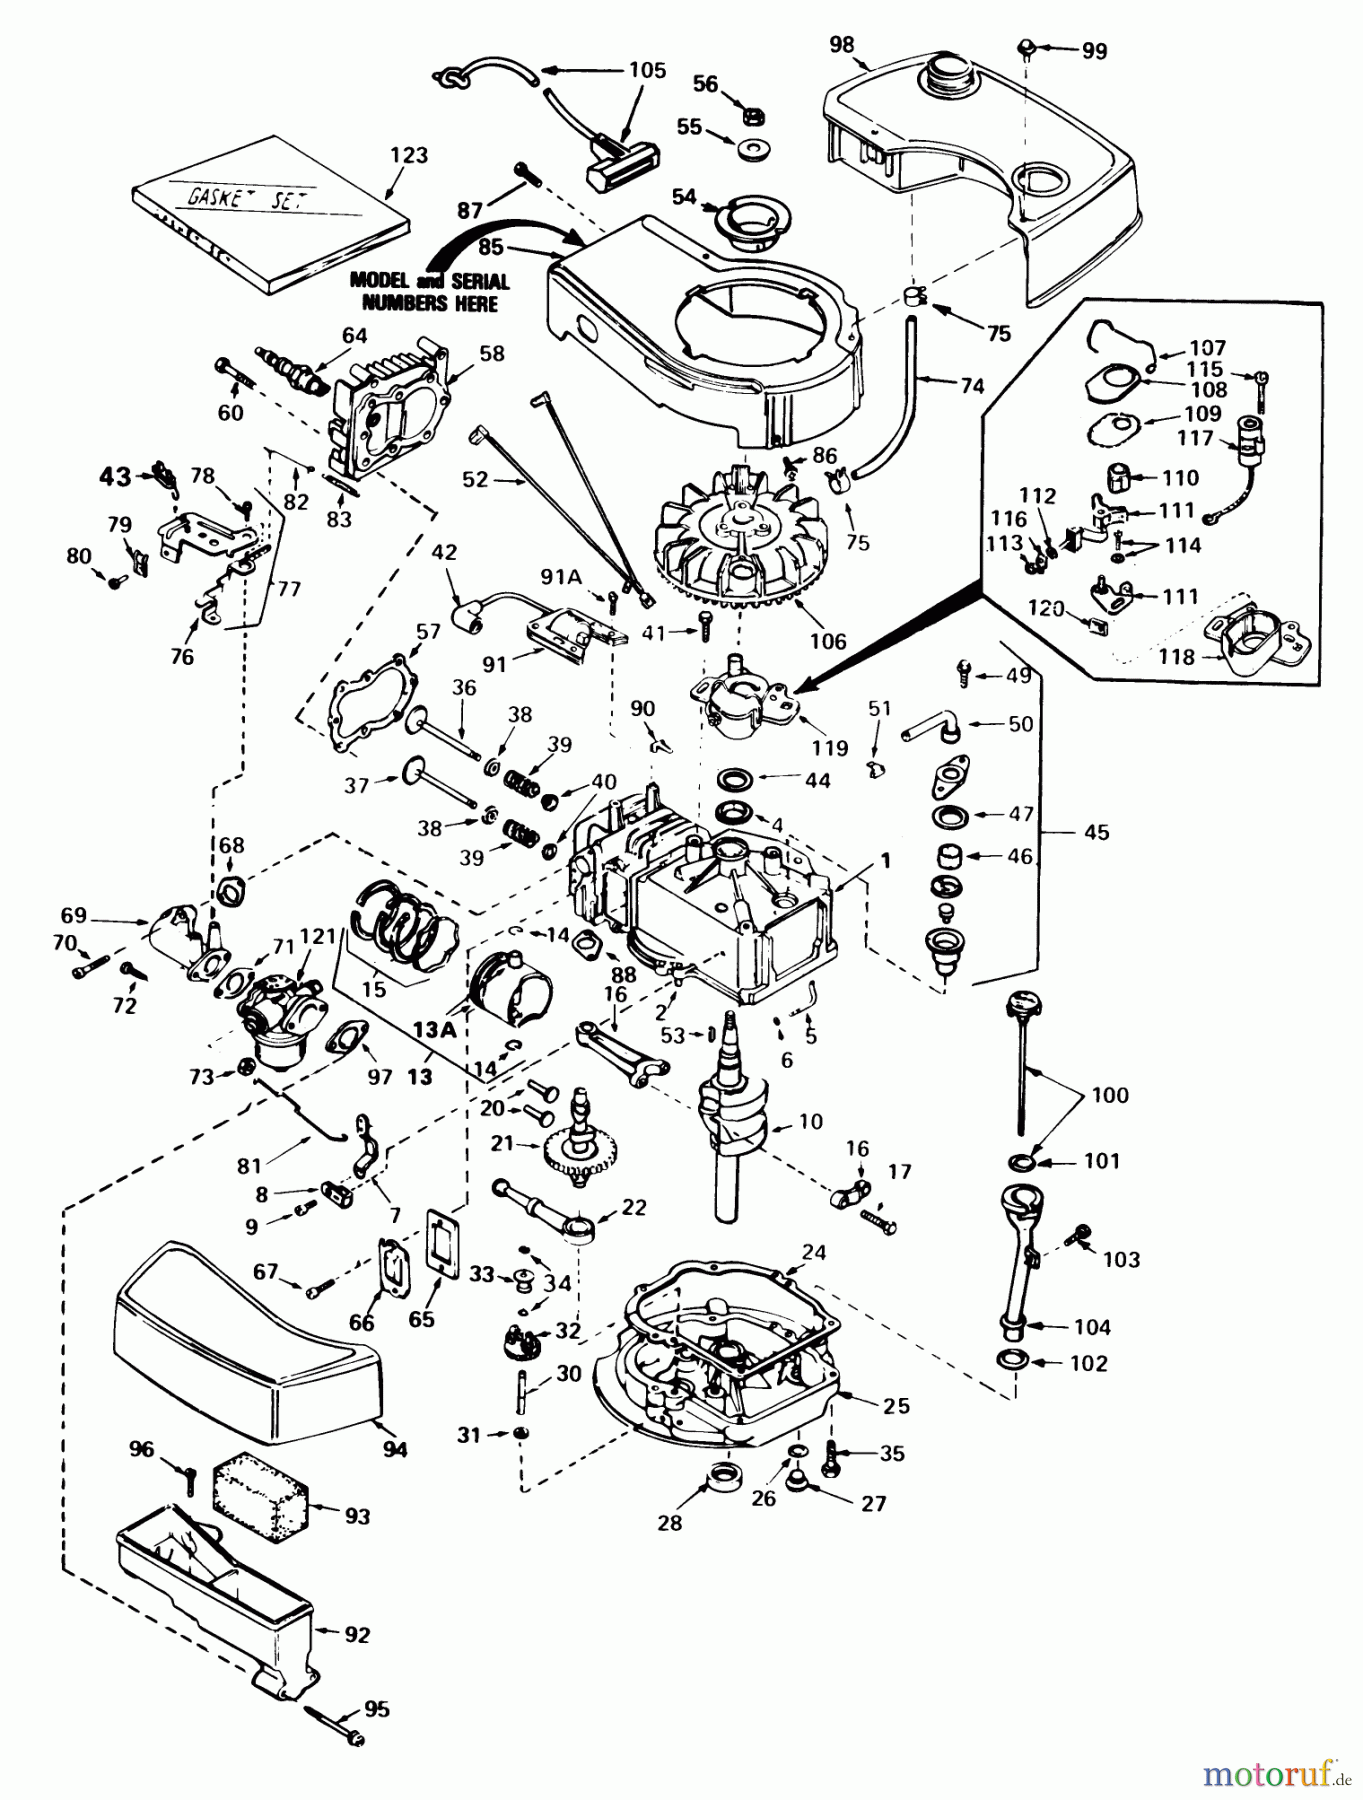  Toro Neu Mowers, Walk-Behind Seite 1 20720 - Toro Lawnmower, 1981 (1000001-1999999) ENGINE TECUMSEH MODEL NO. TNT 100-10065D